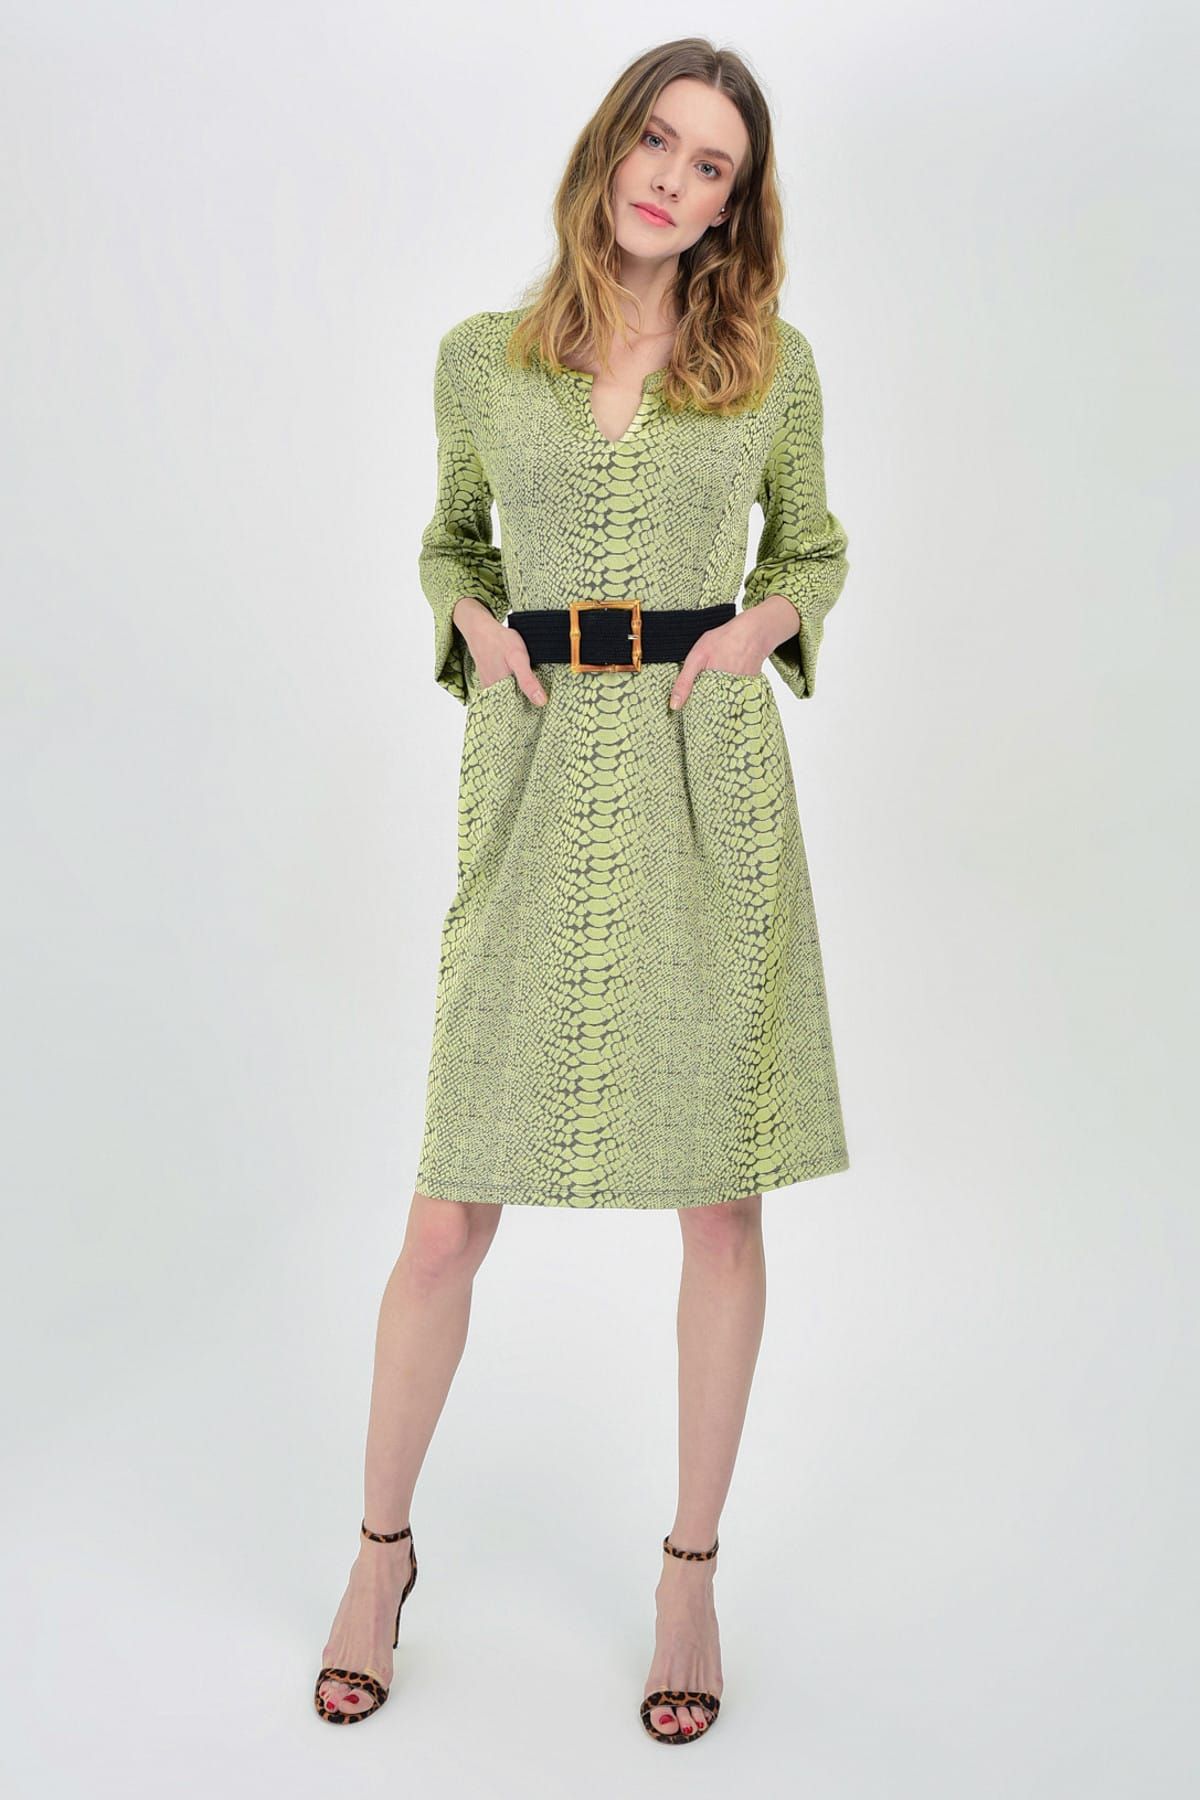 Hanna's Kadın Yeşil Yılan Derisi Uzun Kollu Yaka Ve Cep Detaylı Örme Elbise Hn1423